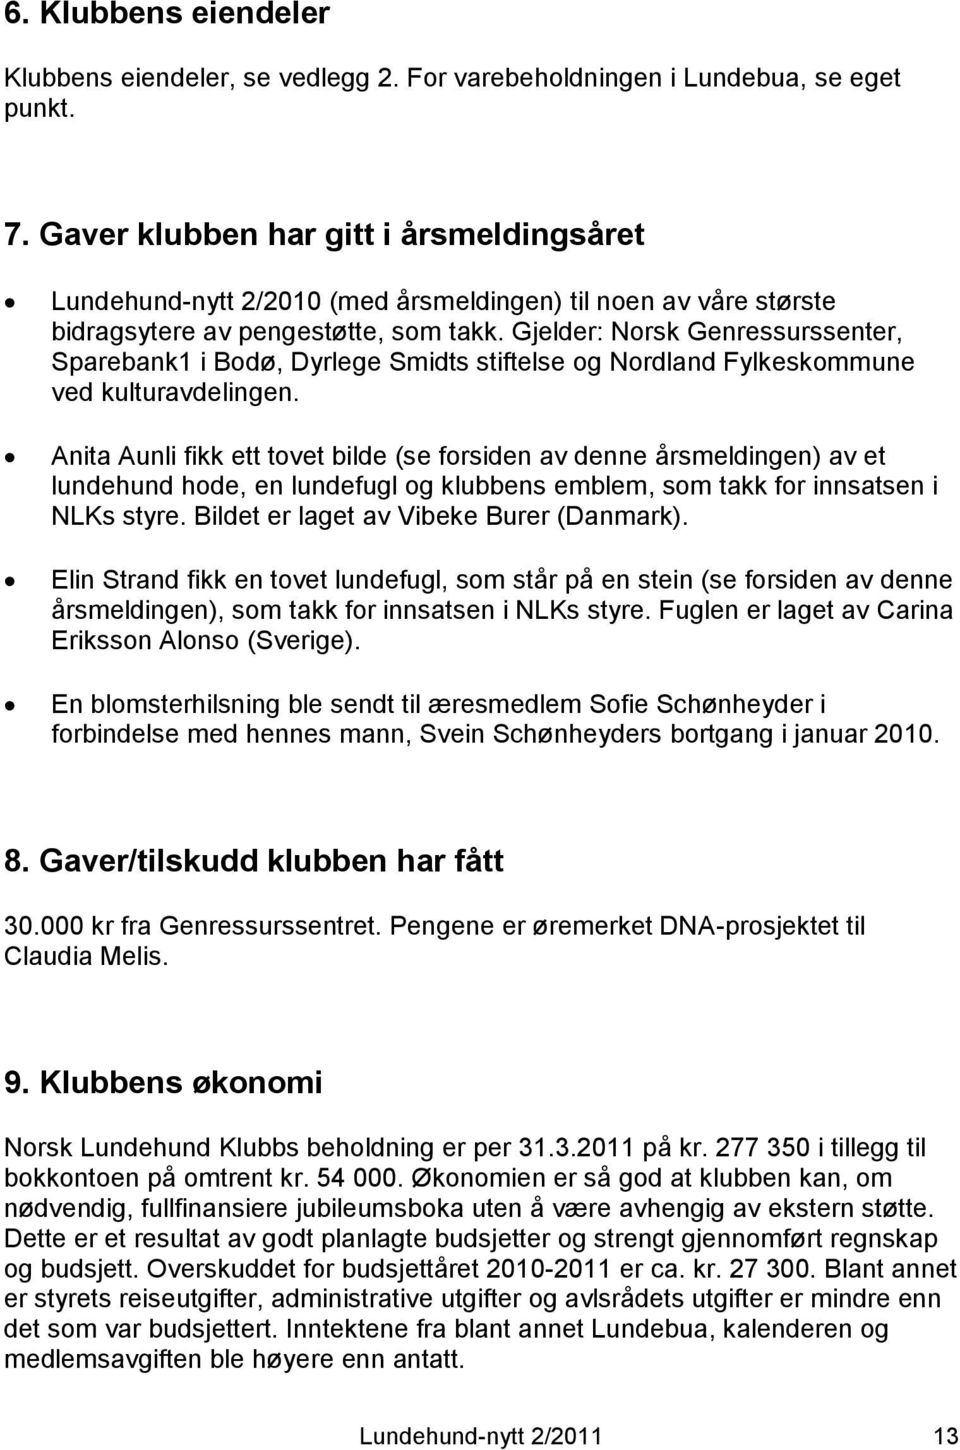 Gjelder: Norsk Genressurssenter, Sparebank1 i Bodø, Dyrlege Smidts stiftelse og Nordland Fylkeskommune ved kulturavdelingen.